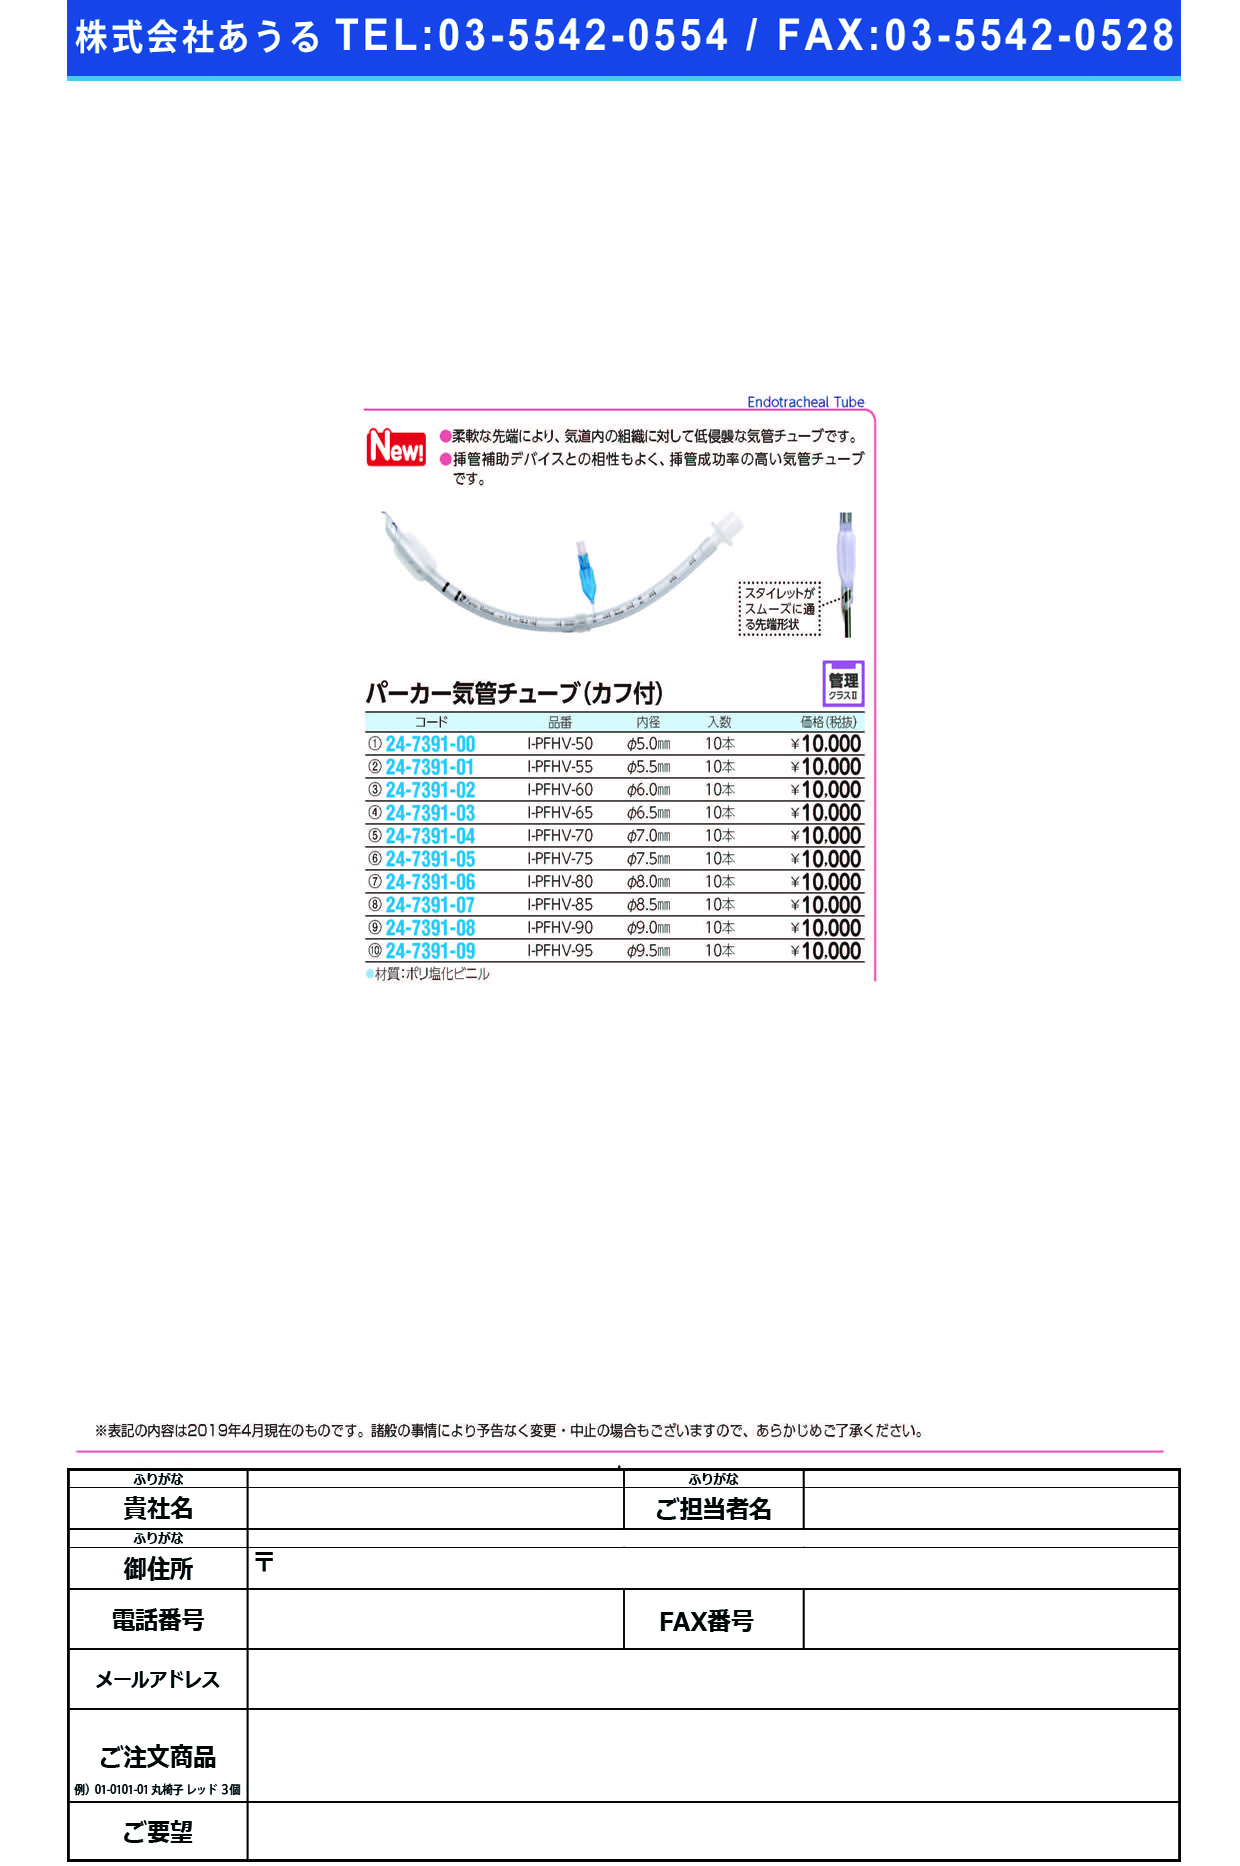 (24-7391-08)パーカー気管チューブI-PFHV-90(9.0MM)10ﾎﾝ ﾊﾟｰｶｰｷｶﾝﾁｭｰﾌﾞ(日本メディカルネクスト)【1箱単位】【2019年カタログ商品】